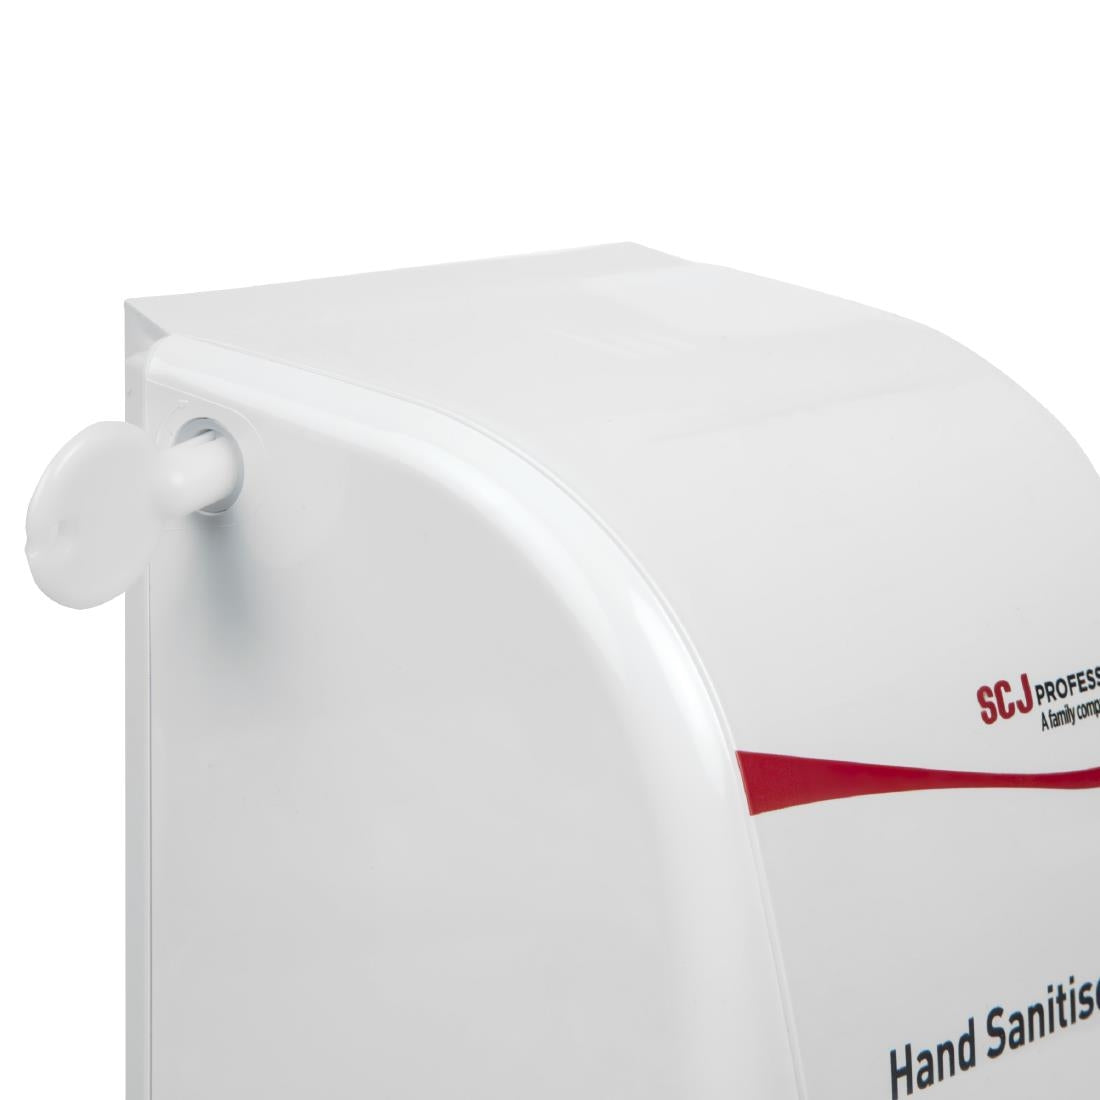 Deb Hand Sanitiser Dispenser and 3 Unperfumed Foam Hand Sanitisers 1Ltr JD Catering Equipment Solutions Ltd